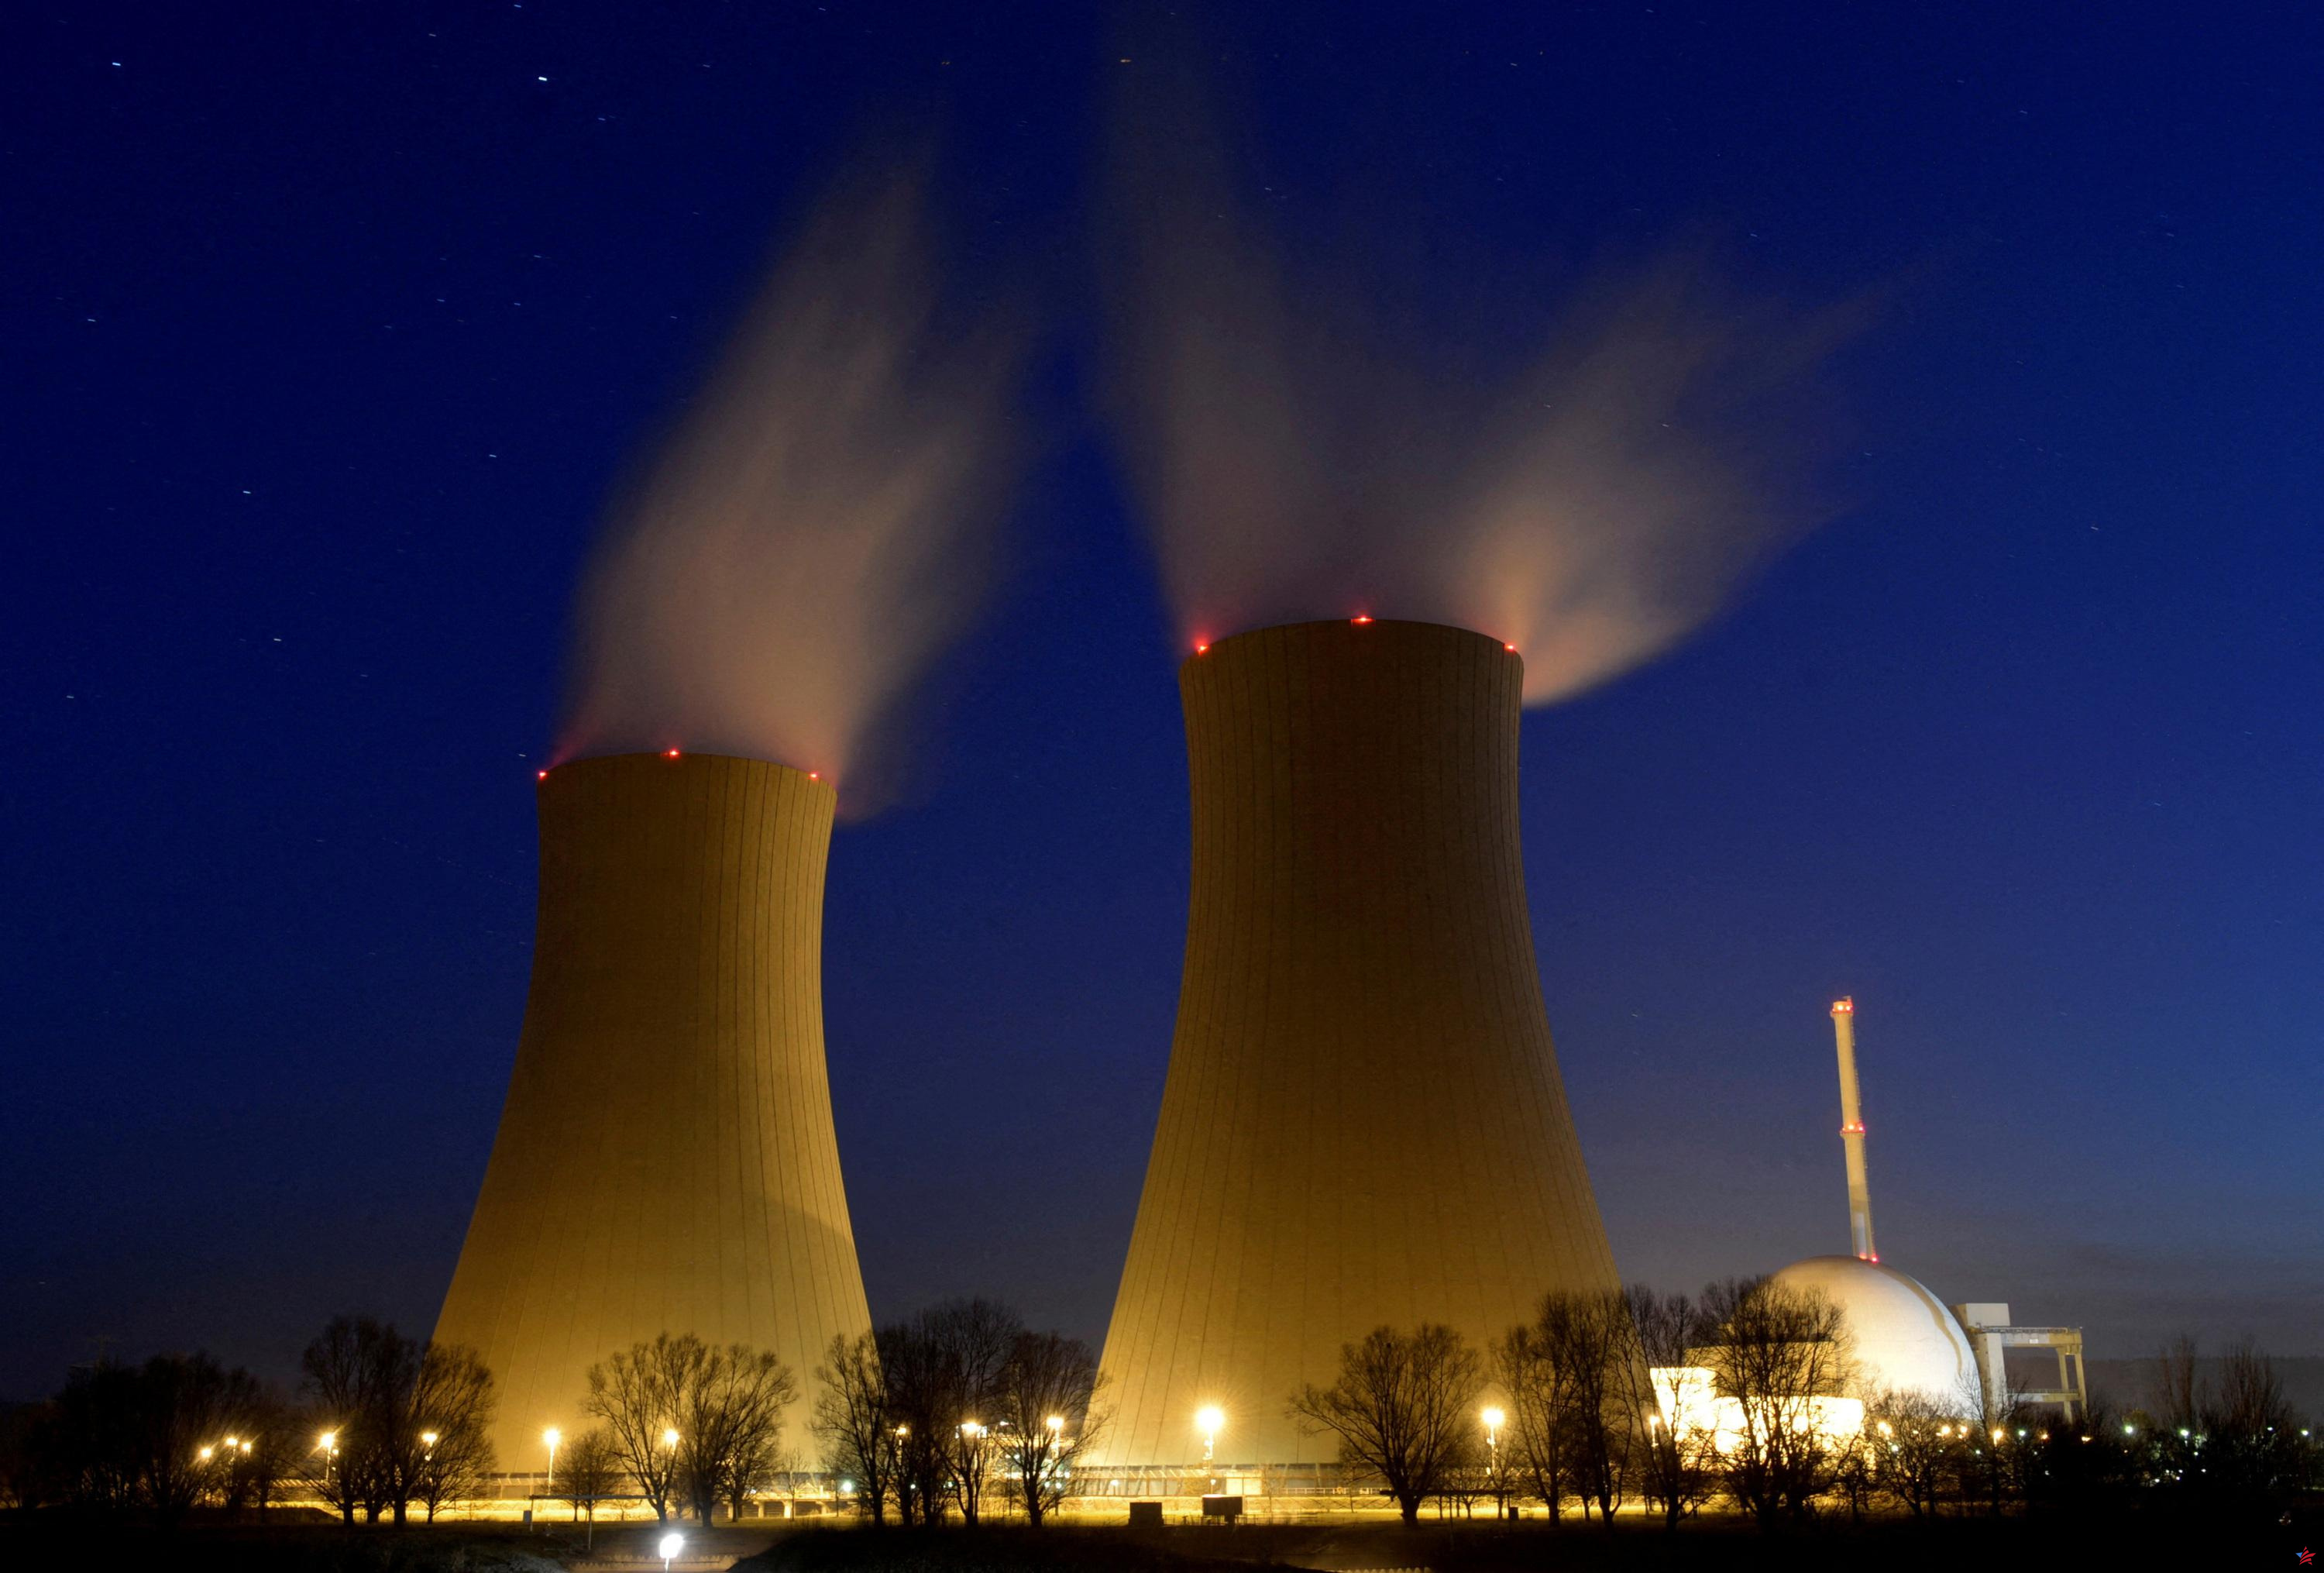 Londres anunciará nuevas inversiones en energía nuclear